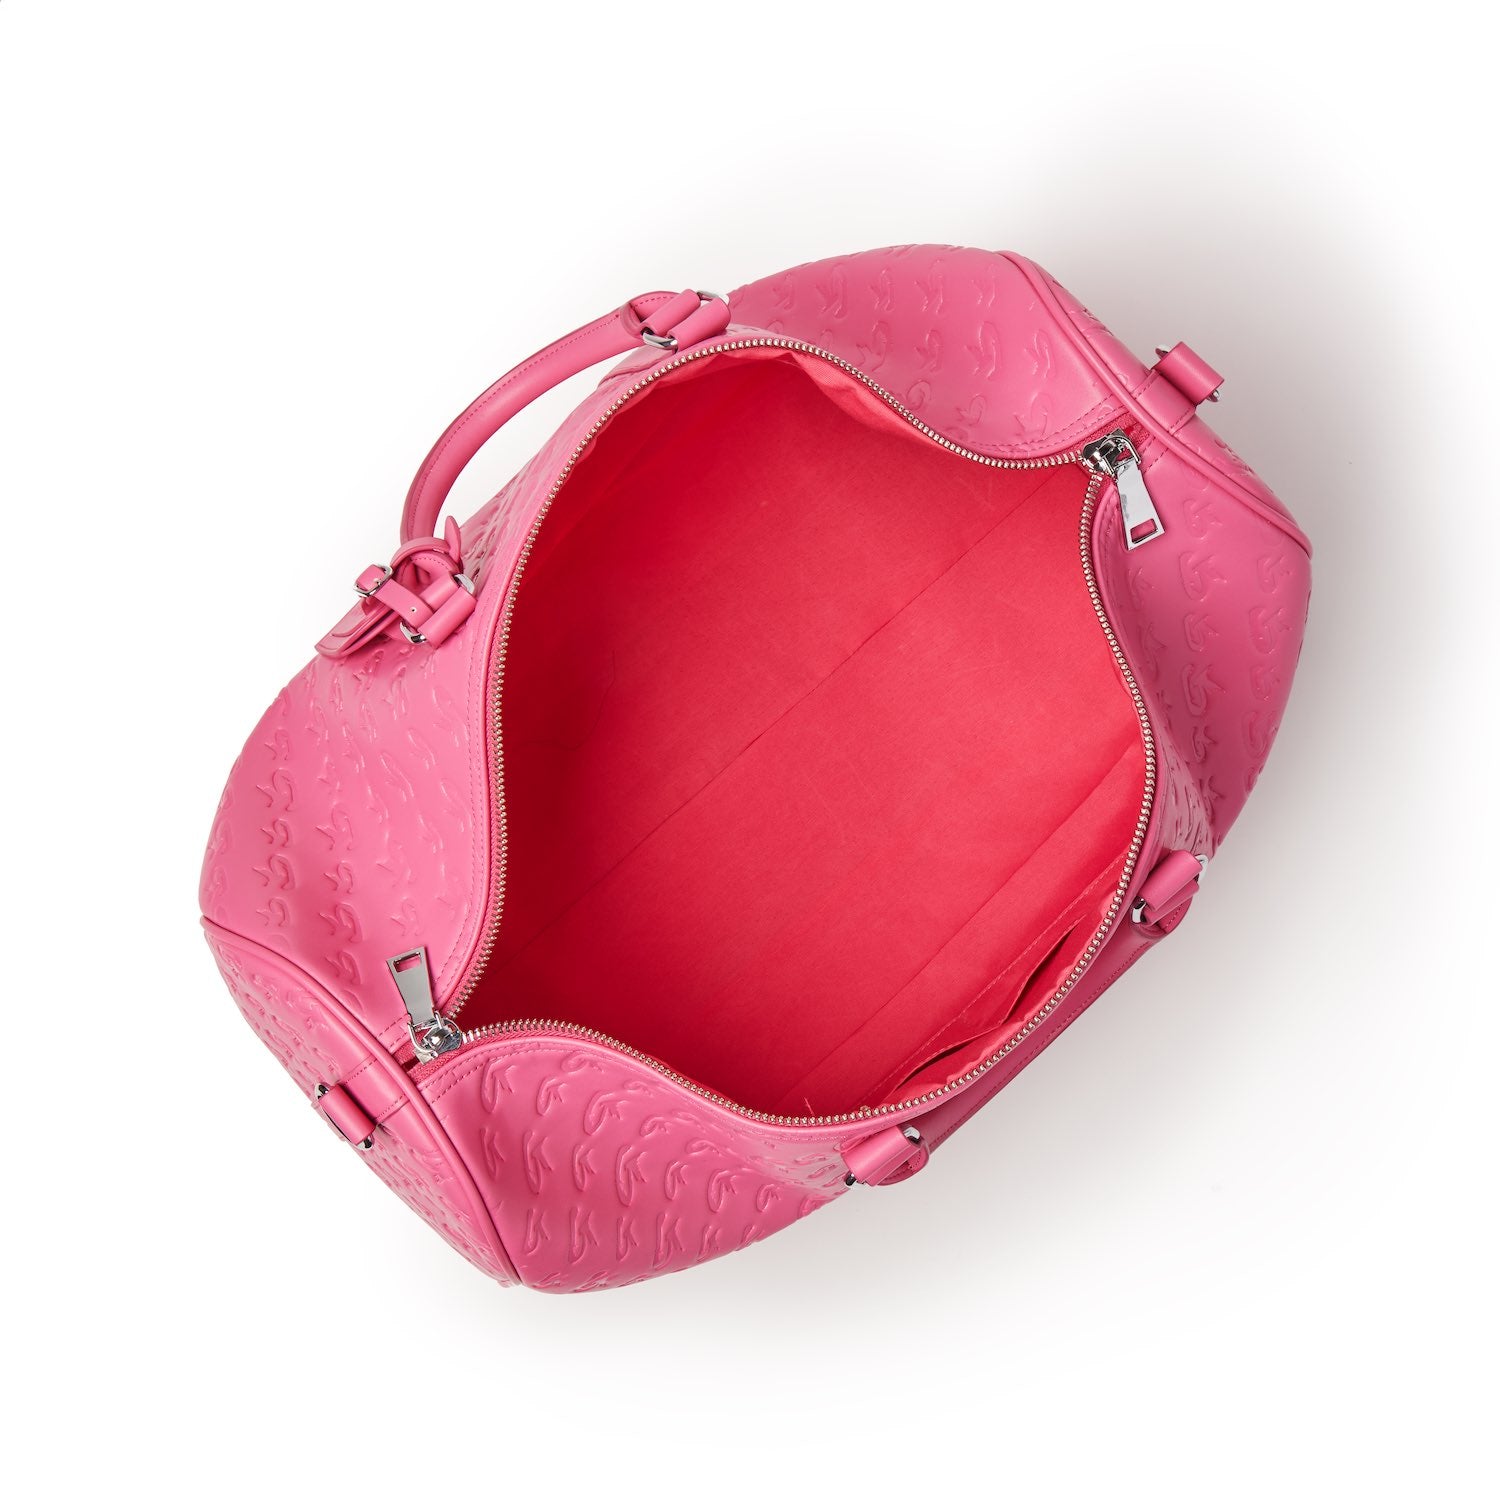 PINK METALLIC DUFFLE BAG – CAUSE For Elegance